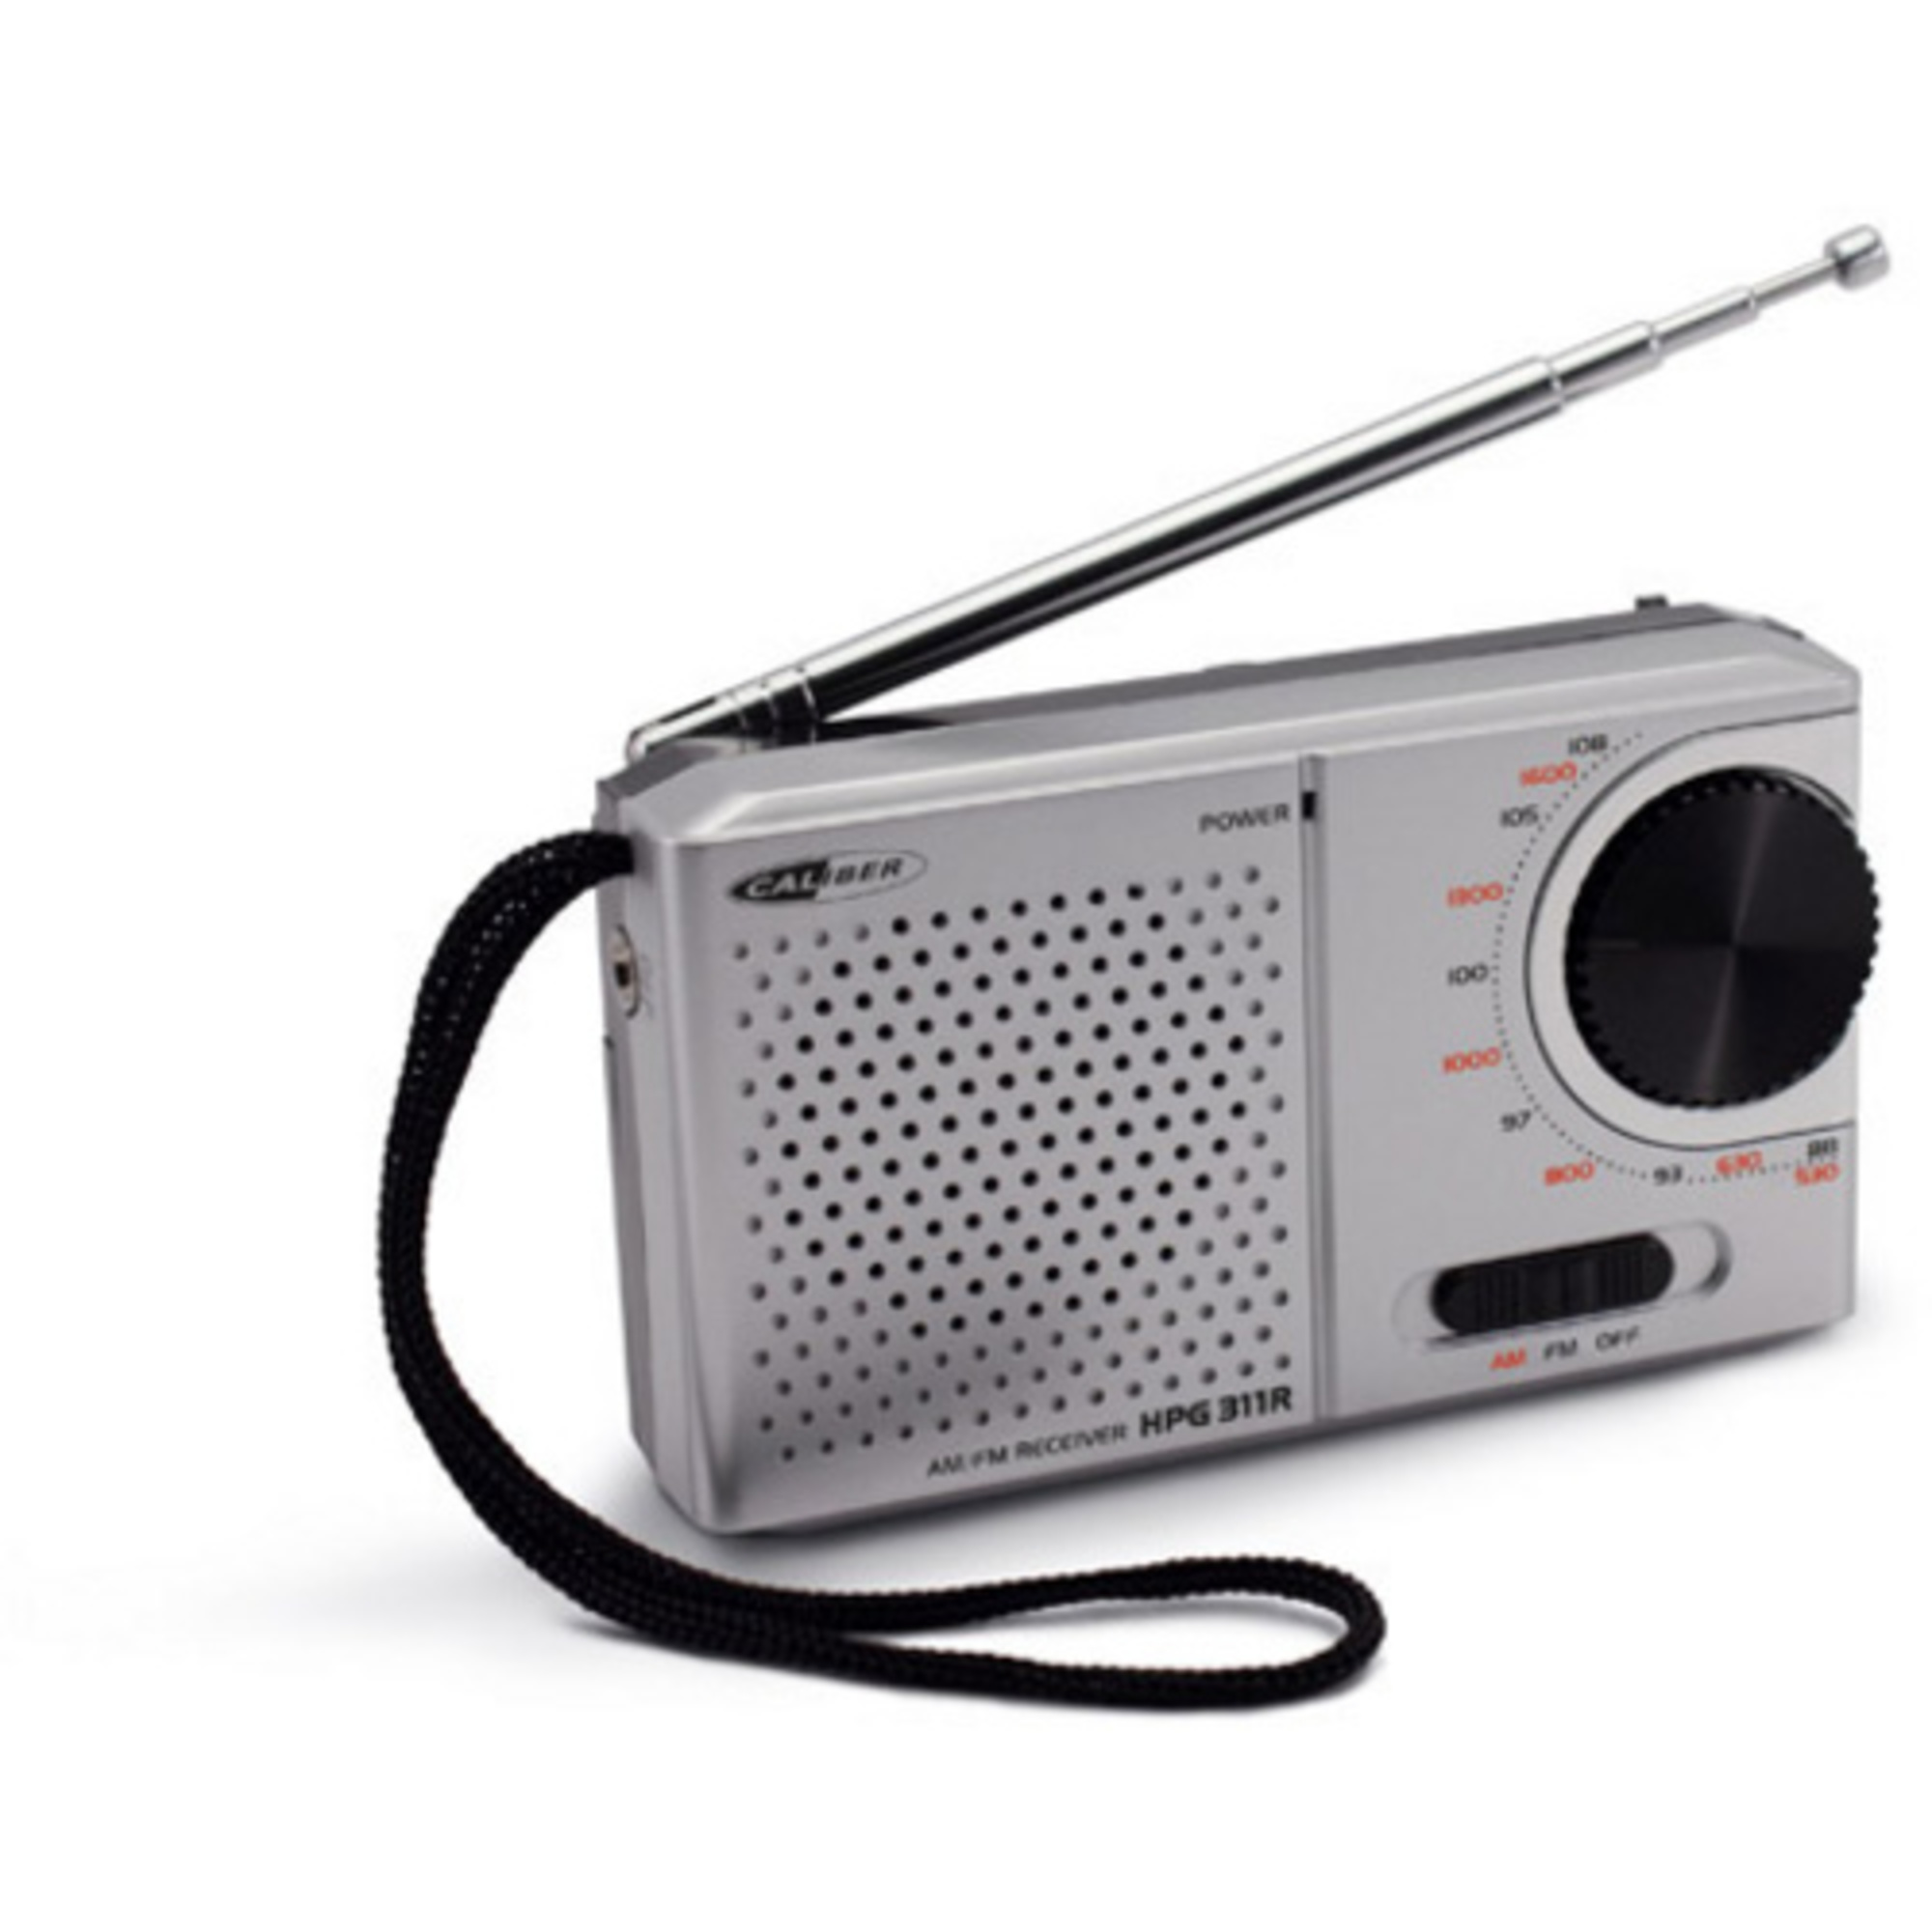 Radio, AM, Silbrig FM, CALIBER Tragbares HPG311R